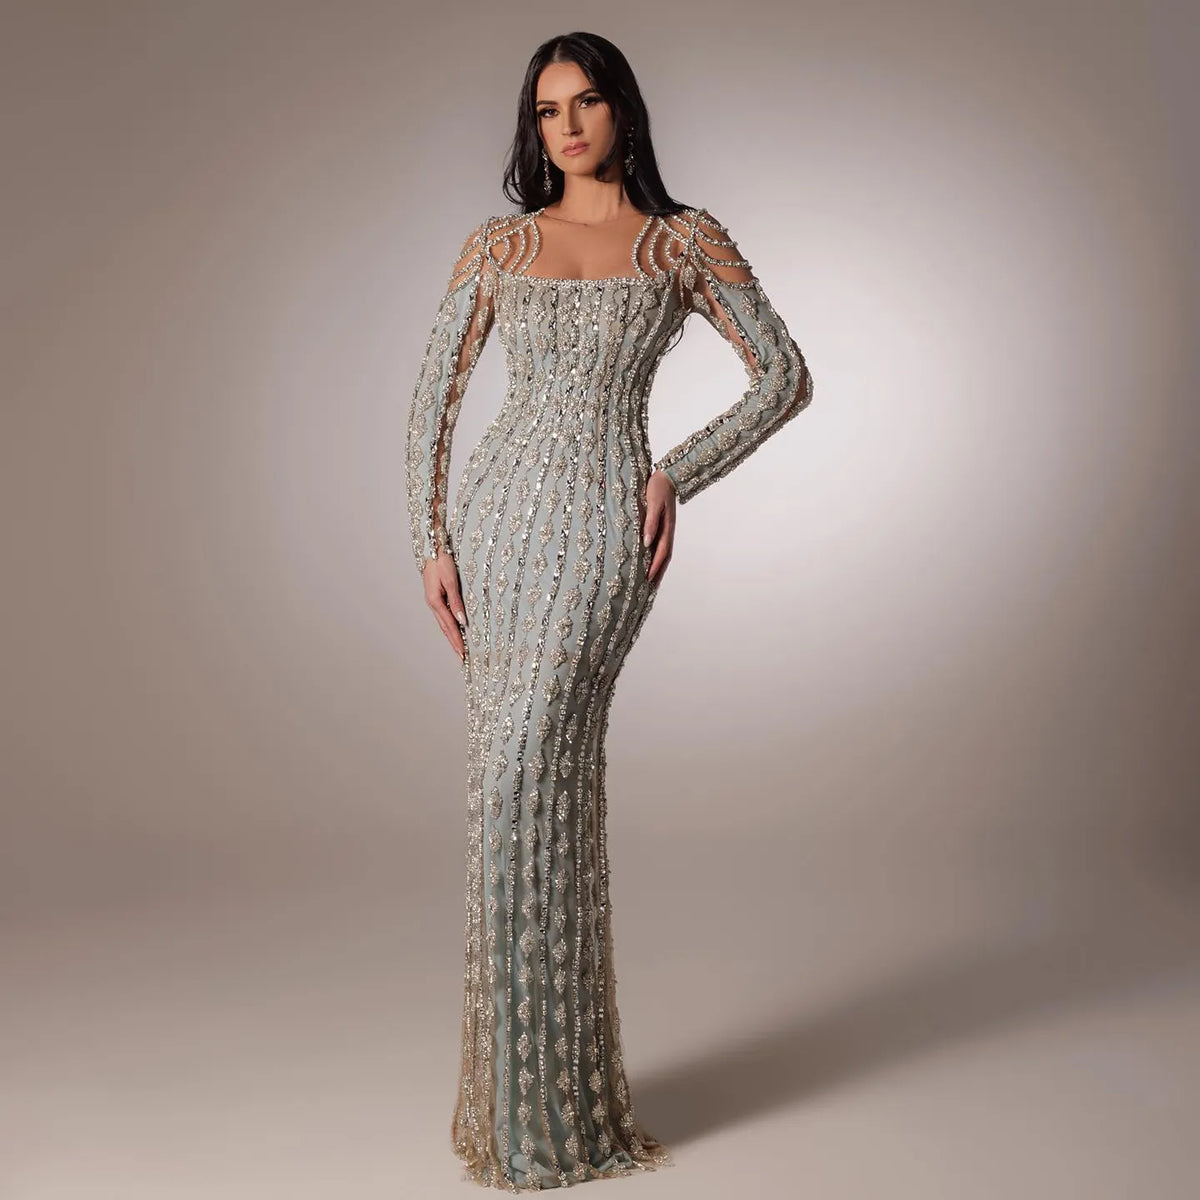 Sharon Said Luxus Arabisch Sage Grün Dubai Abendkleider Meerjungfrau Muslimischen Langen Ärmeln Islamische Frauen Hochzeit Party Kleider SS398